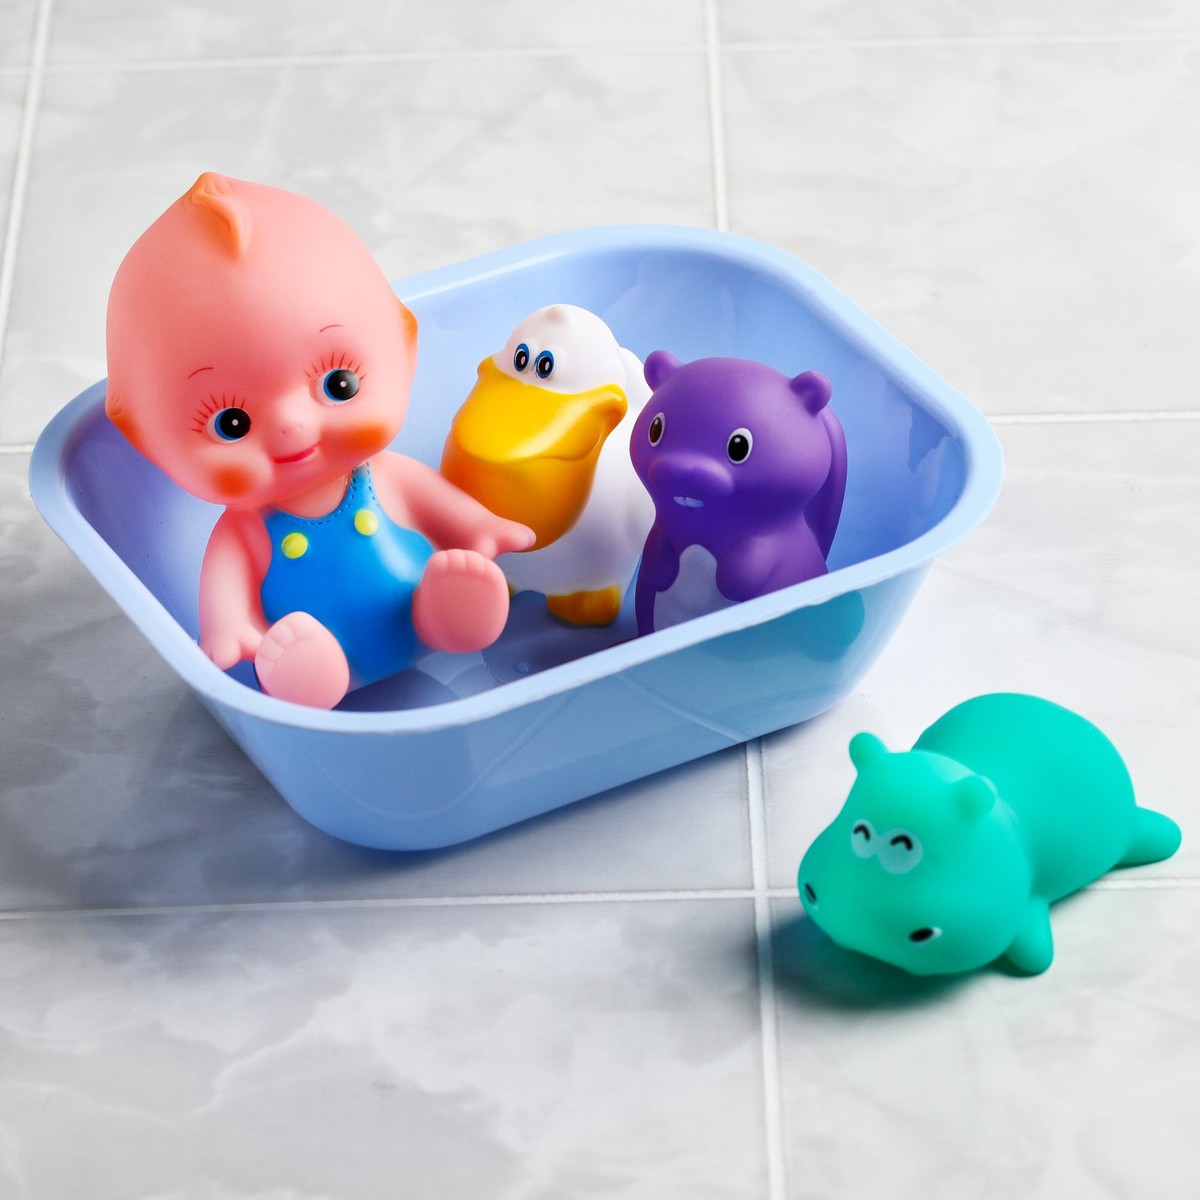 Игрушка для купания в ванне. Игрушки для купания. Игрушки в ванную. Детские игрушки для ванны. Набор игрушек для купания.